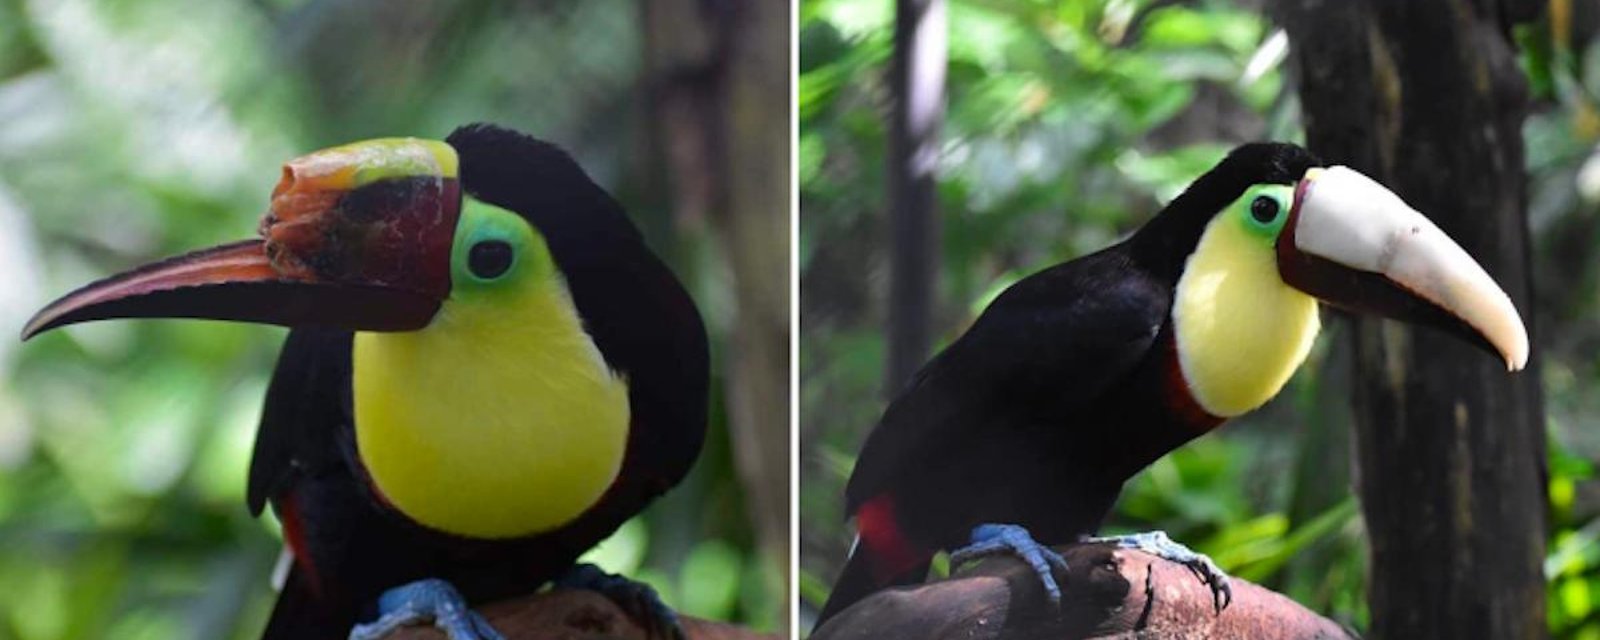 L’impression 3D vient en aide à un toucan maltraité au Costa Rica